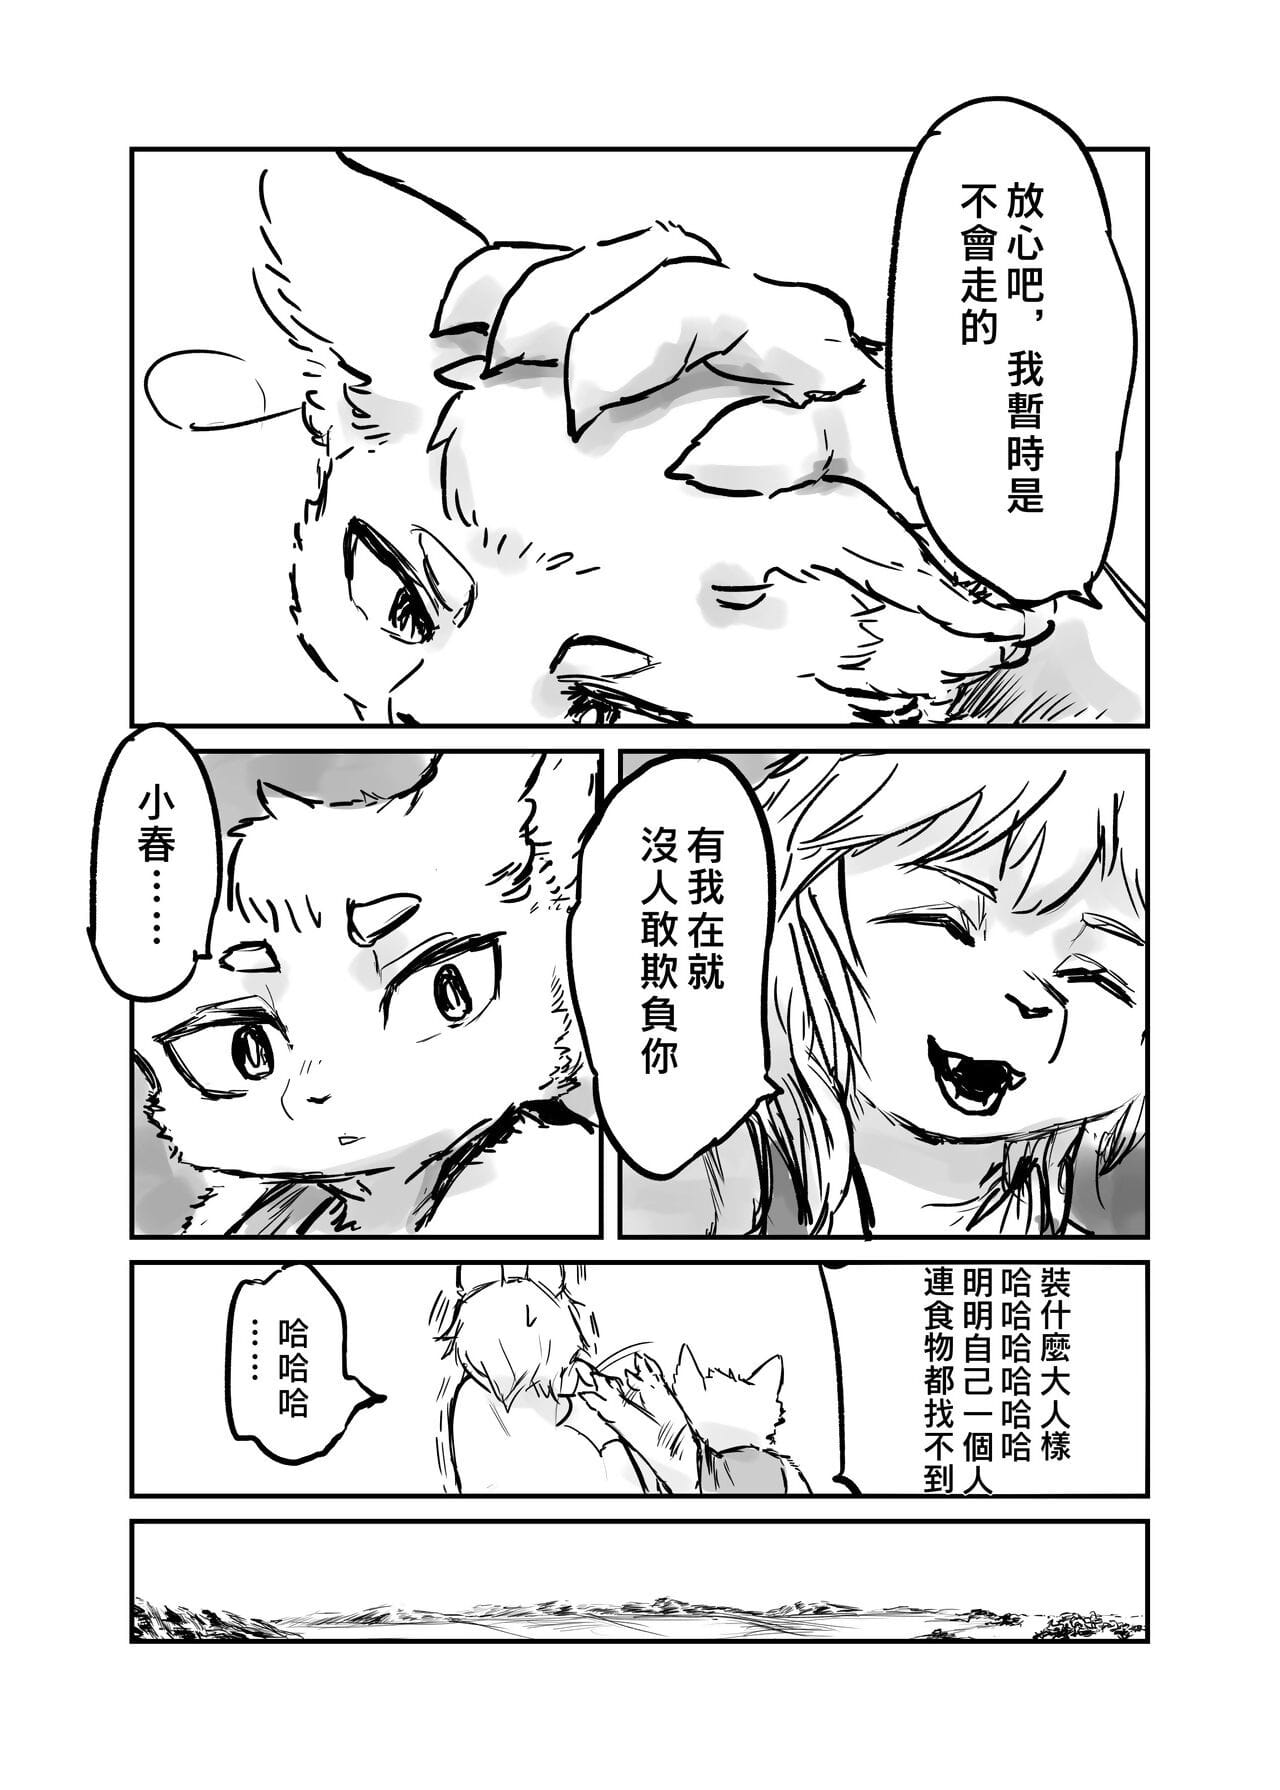 （the Посетитель 他乡之人 by：鬼流 page 1